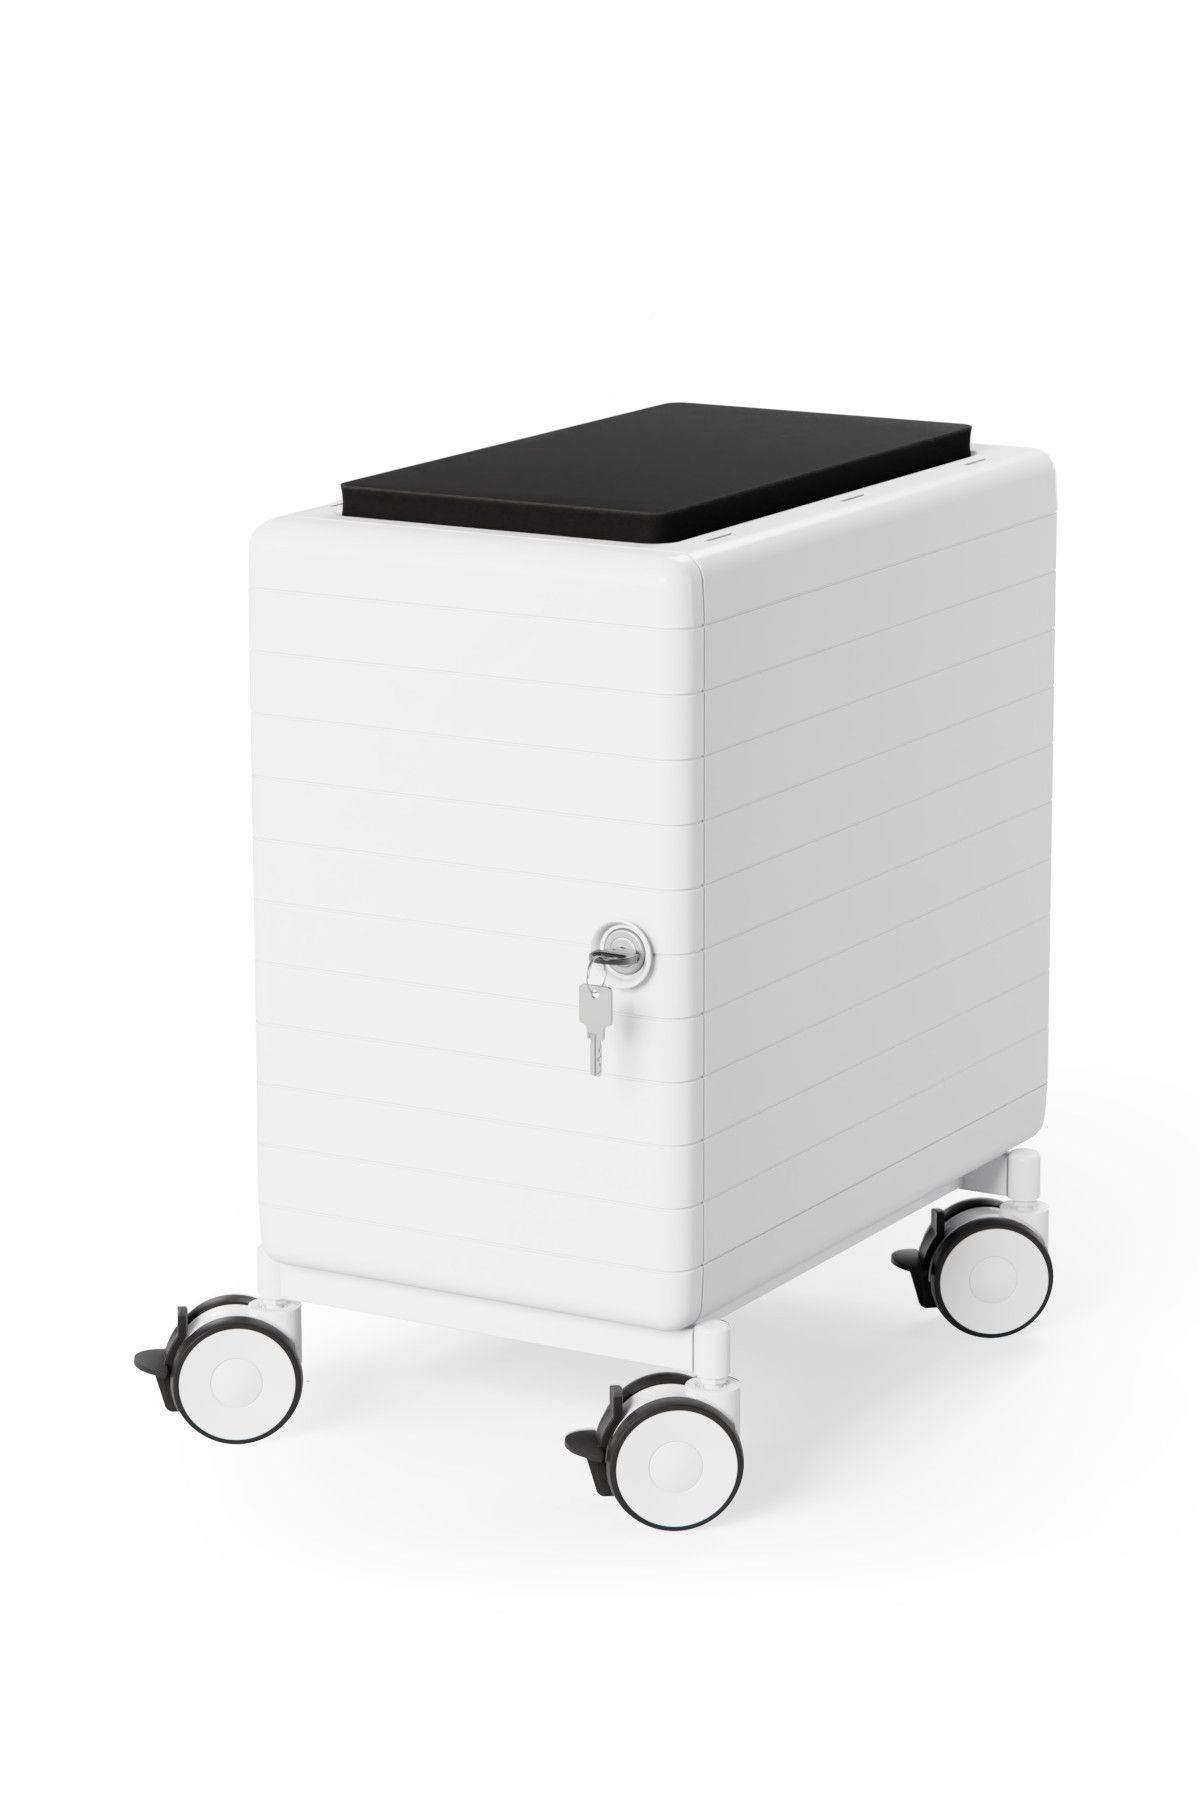 TALO.YOU Personalbox aus Kunststoff in weiß, Farbe wählbar